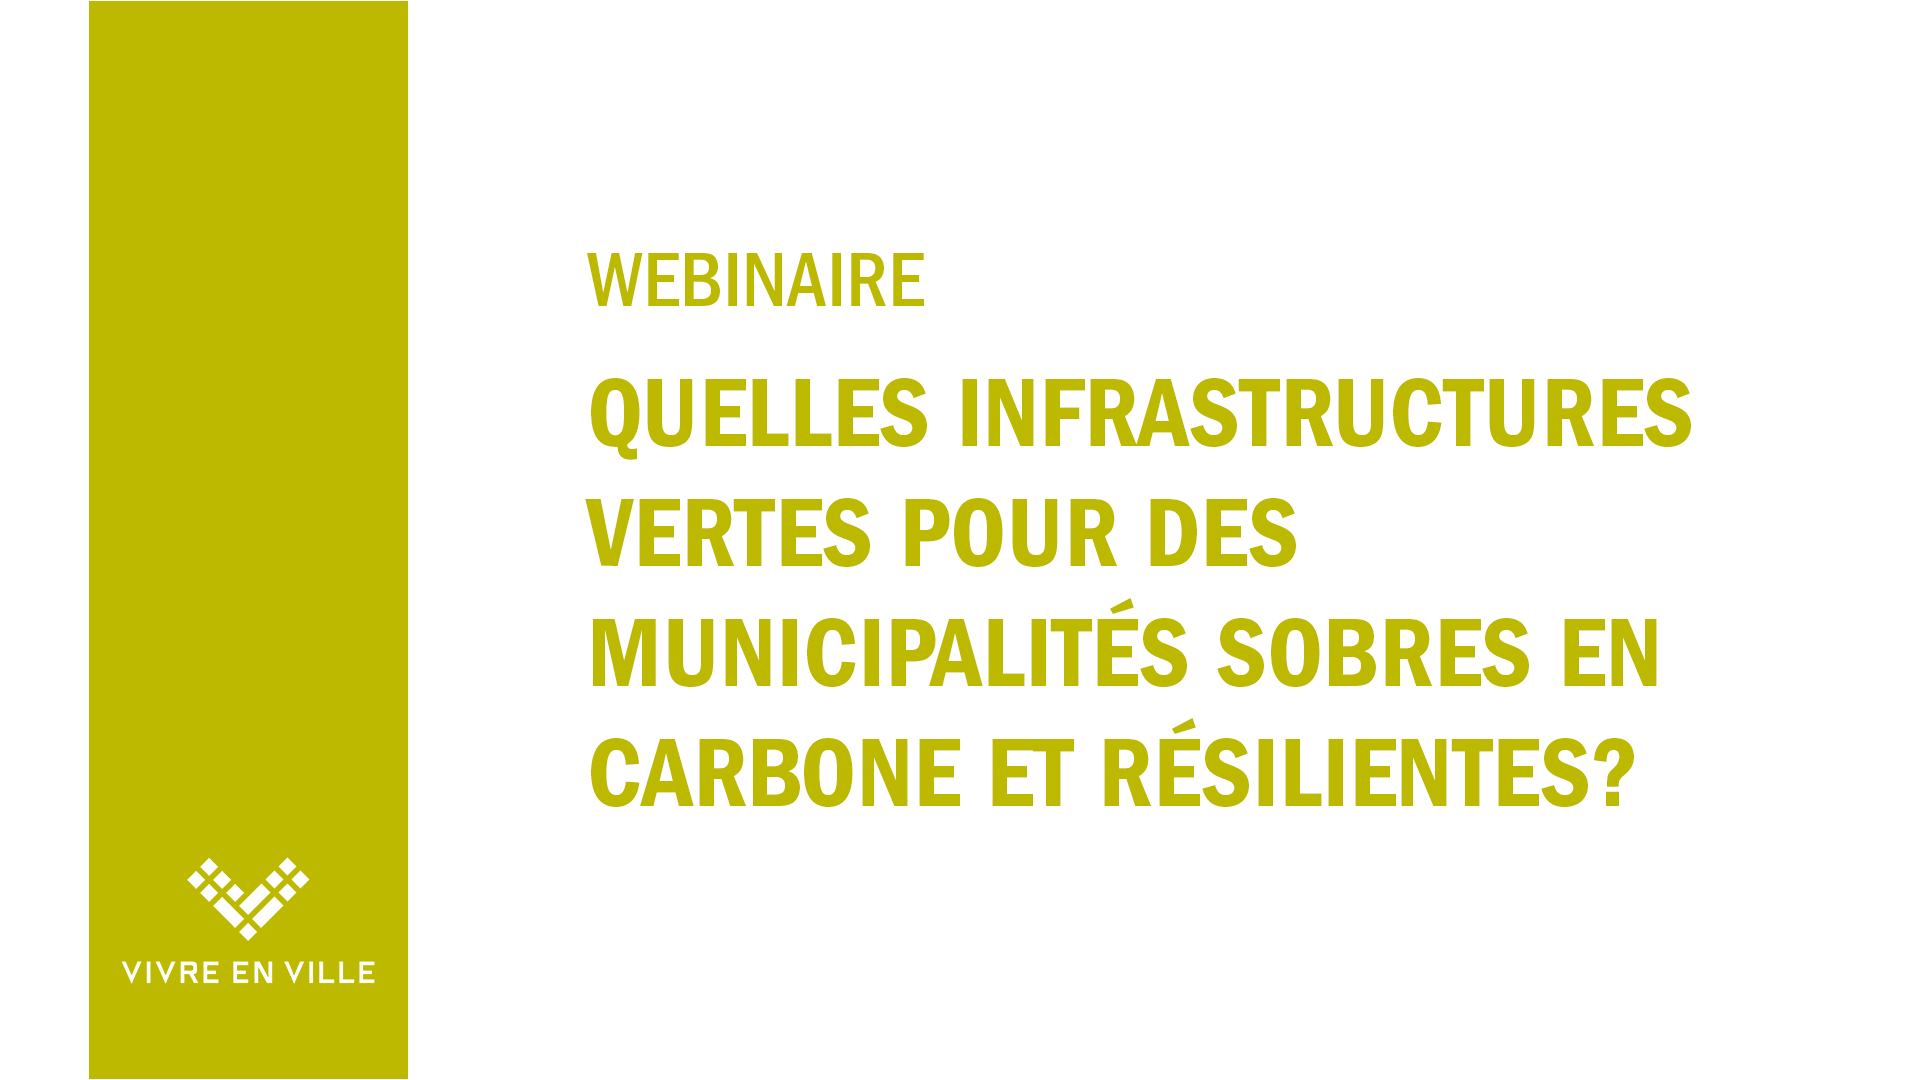 Webinaire: Quelles infrastructures vertes pour des municipalités sobres en carbone et résilientes?